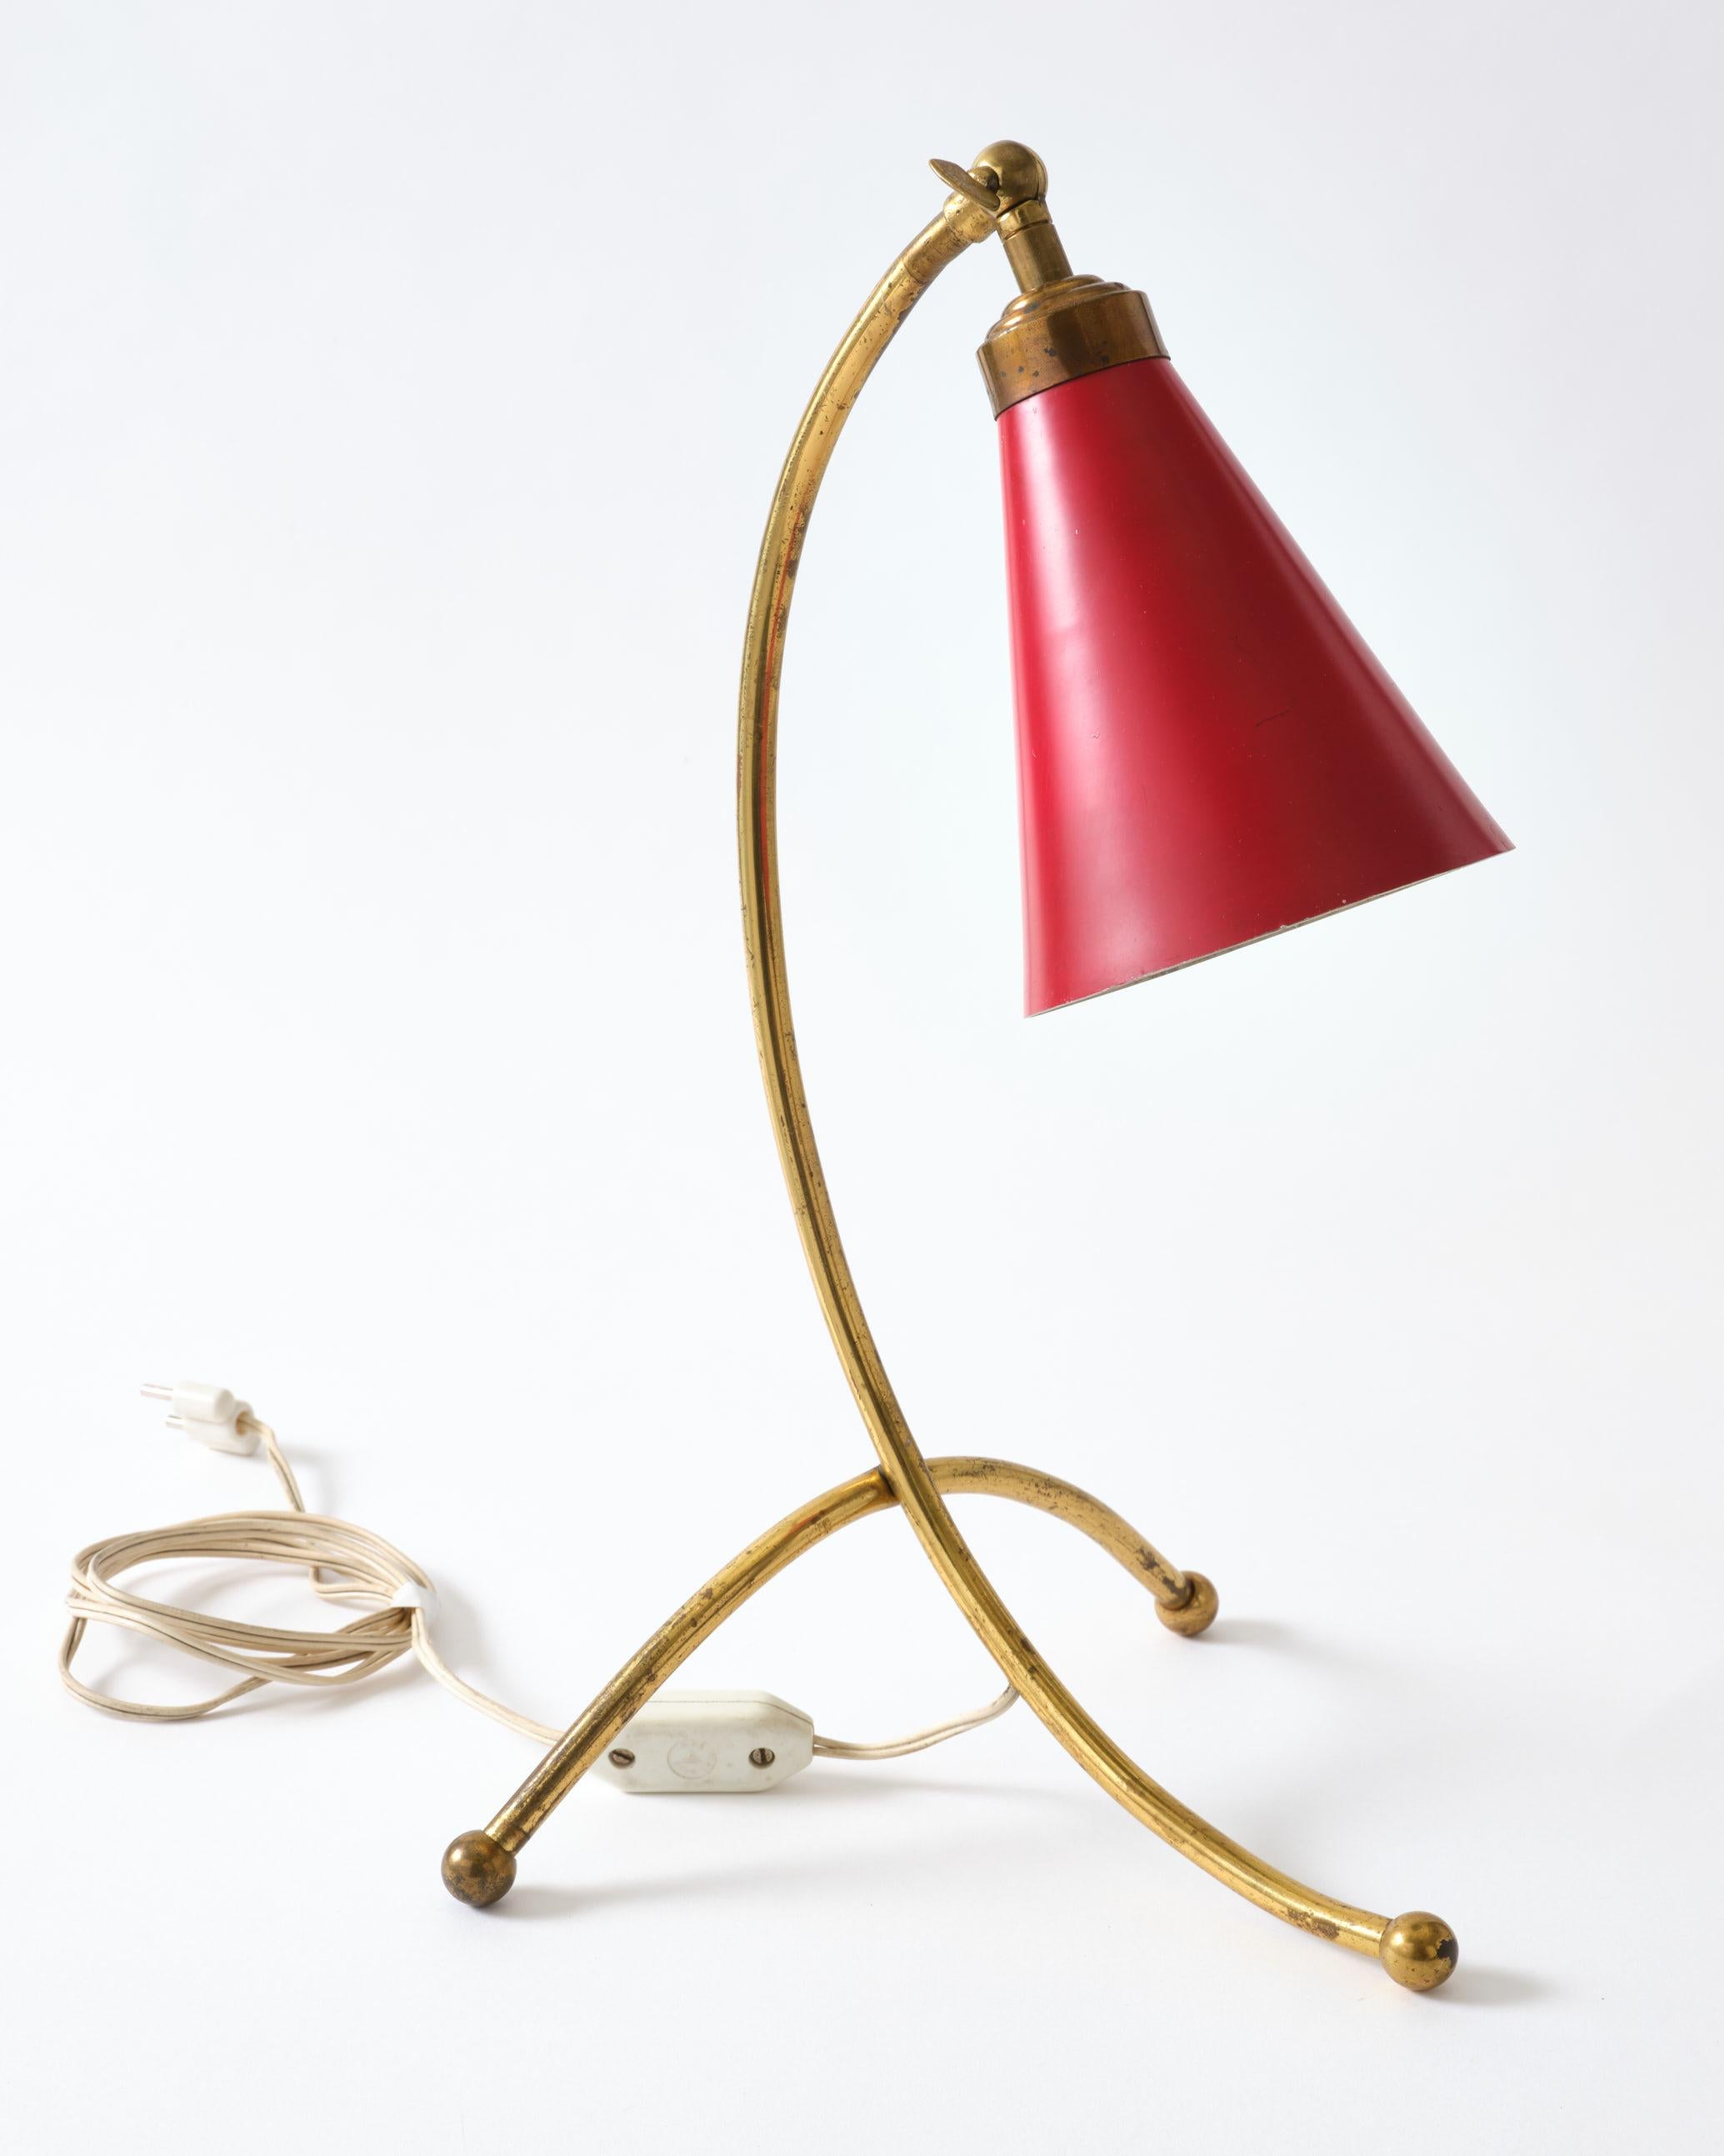 Tischlampe aus Messing mit rotem Metallschirm. Diese Lampe ist aus Italien, ca. 1950.
Die Lampe wurde nicht poliert. Die Lampe ist im Originalzustand.
Die Lampe wird mit einem kleinen Transformator geliefert, so dass sie auch in den USA verwendet